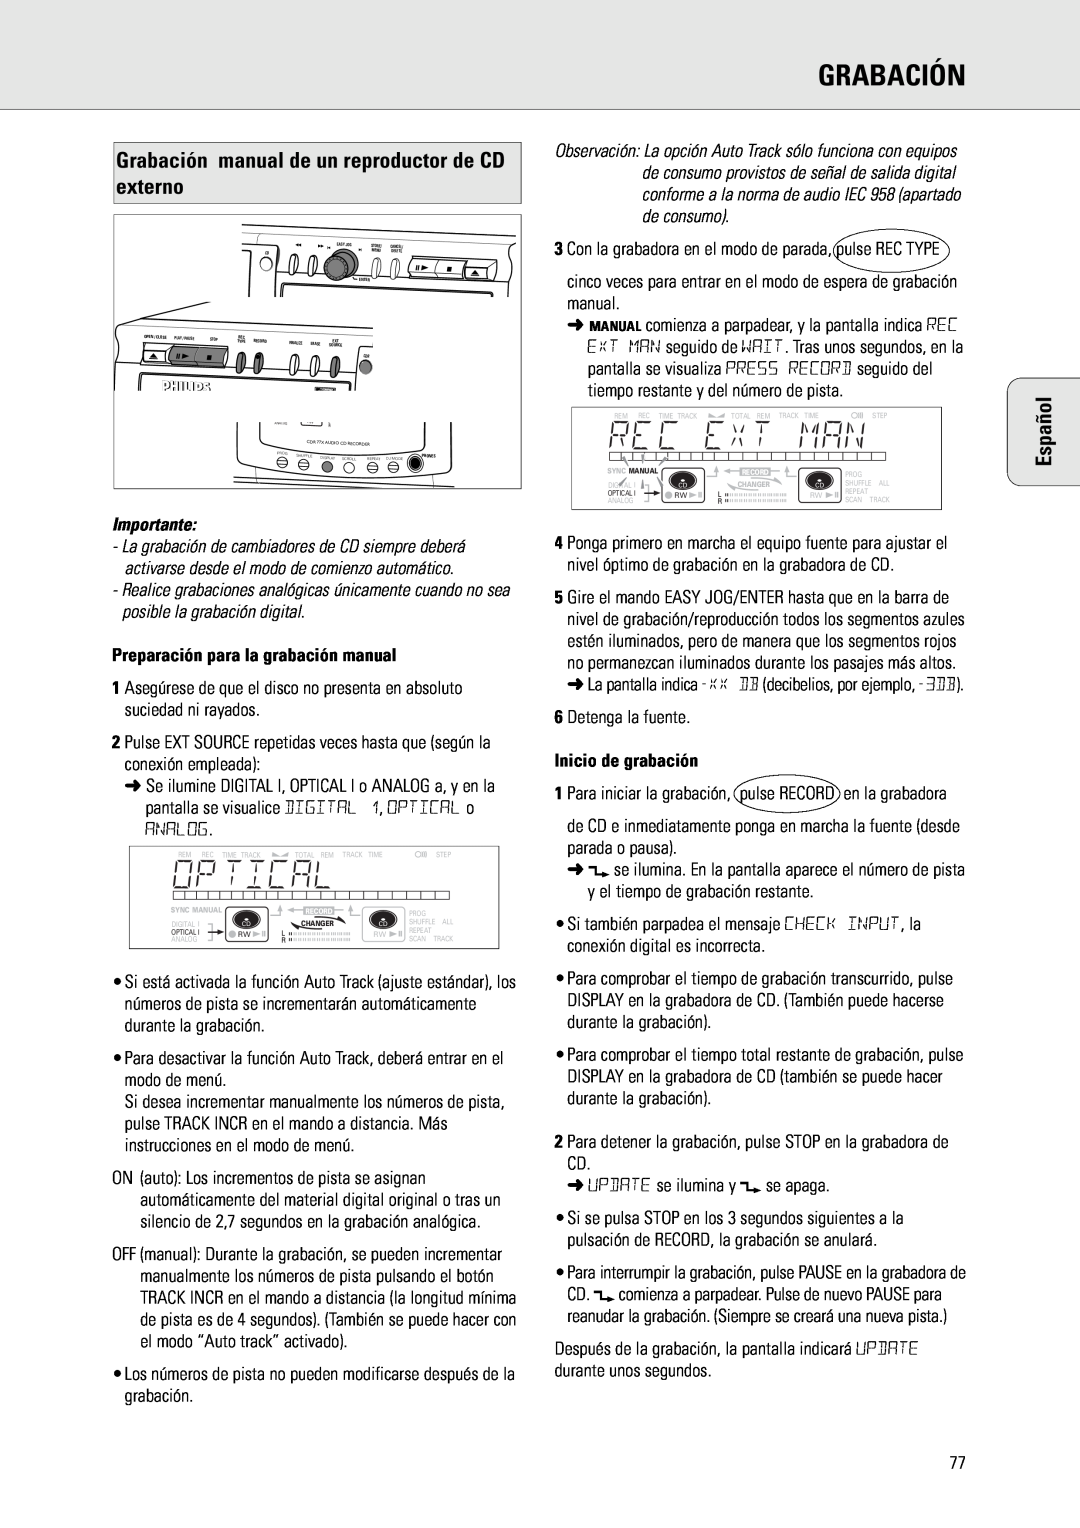 Philips CDR775 Grabación manual de un reproductor de CD externo, Preparación para la grabación manual, Inicio de grabación 